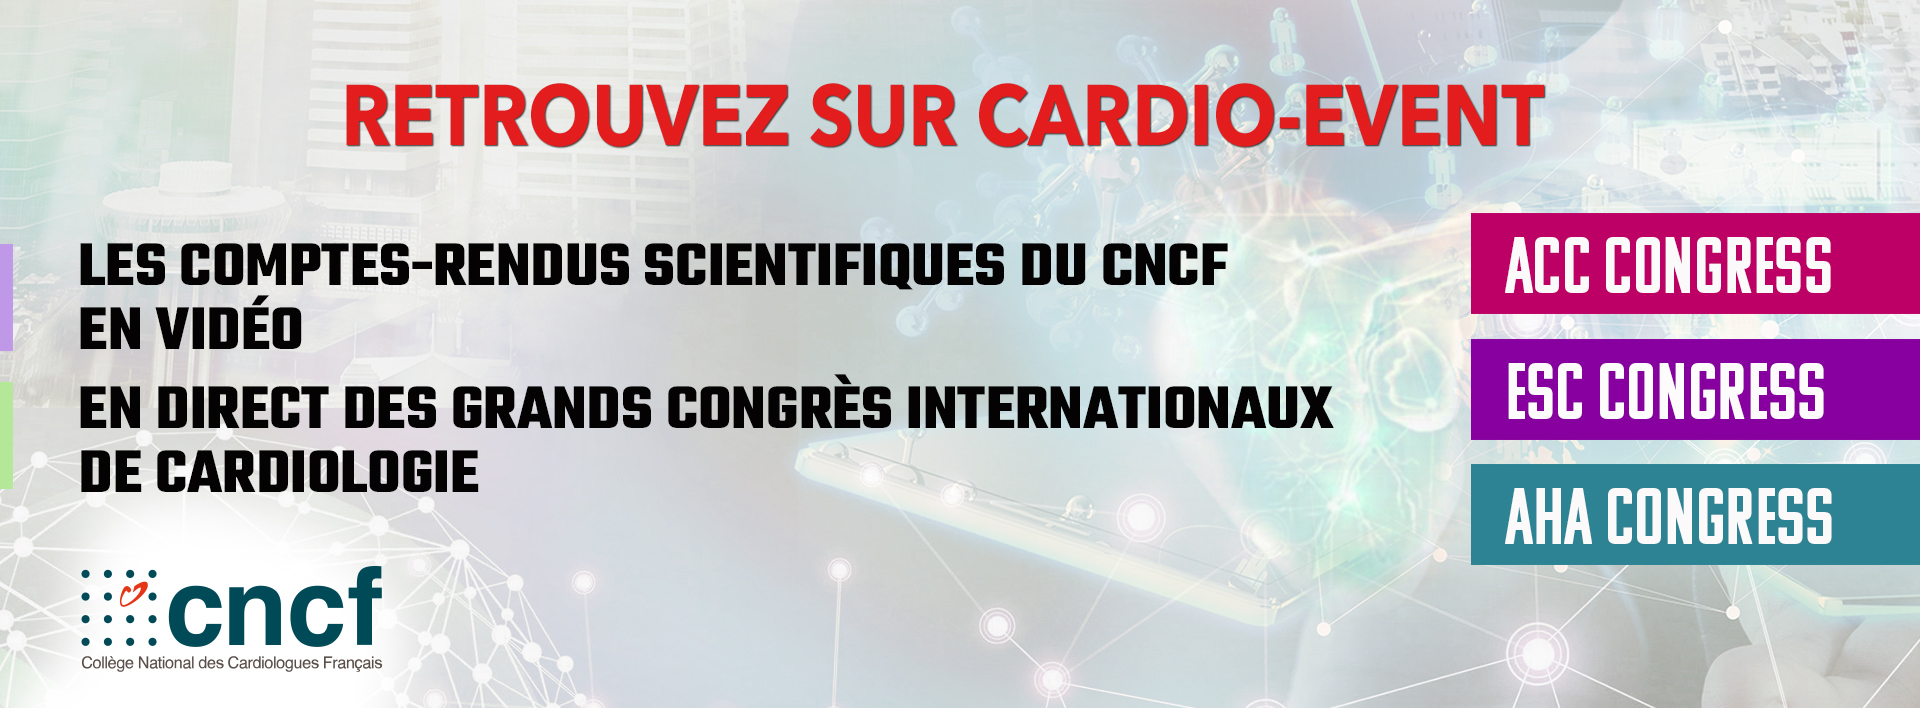 Les comptes-rendus scientifiques du CNCF en vidéo en direct des grand congrès internationaux de cardiologie